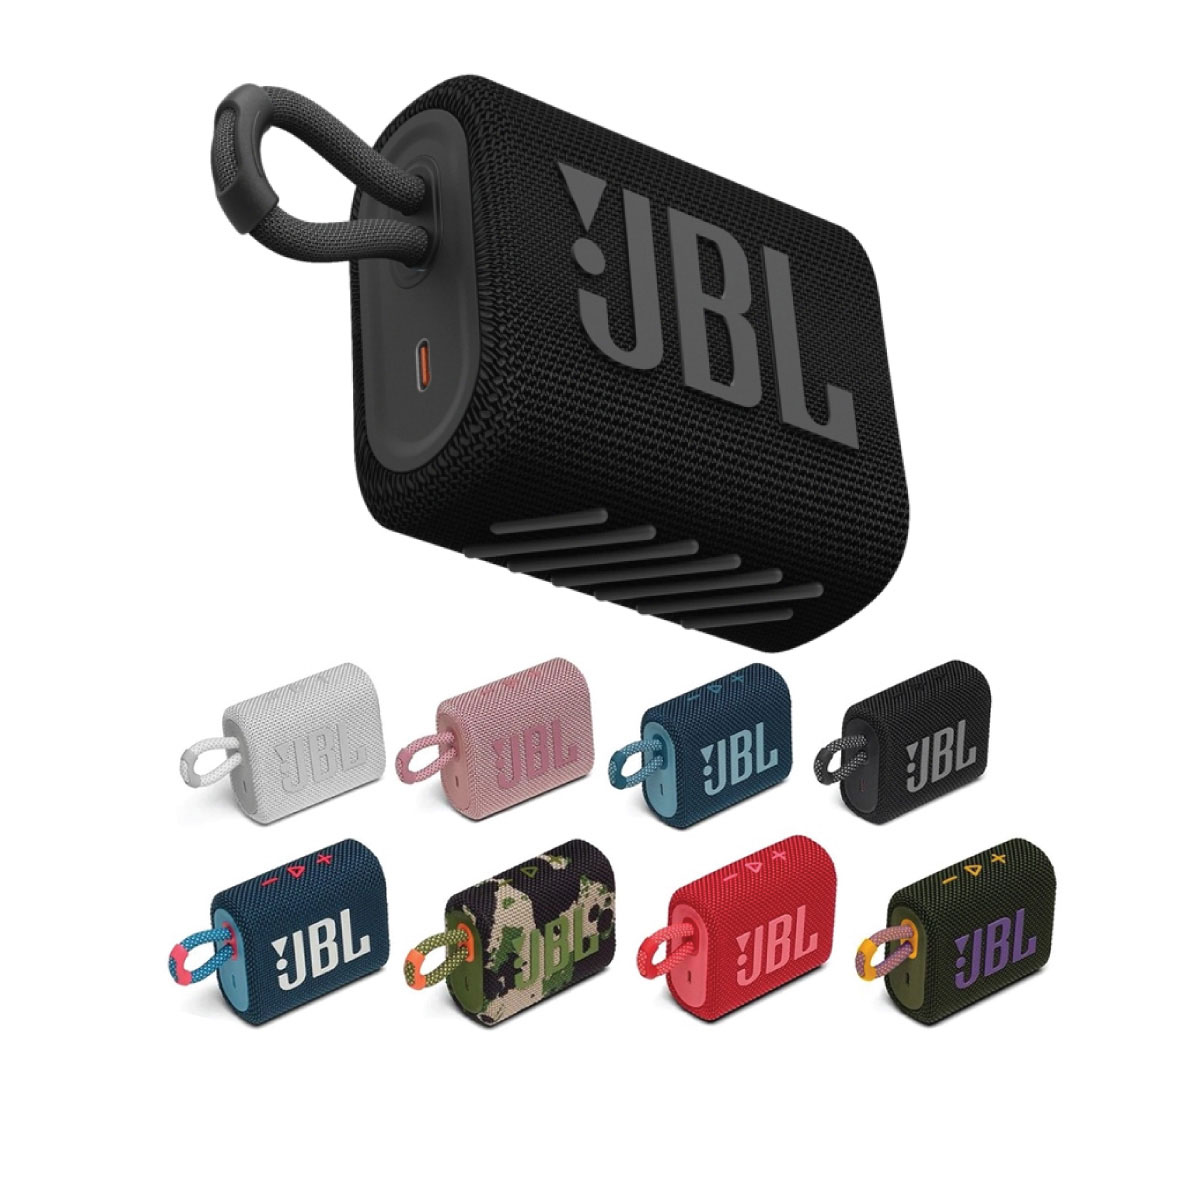 Loa Bluetooth JBL Go 3 nhiều màu sắc để chọn lựa.